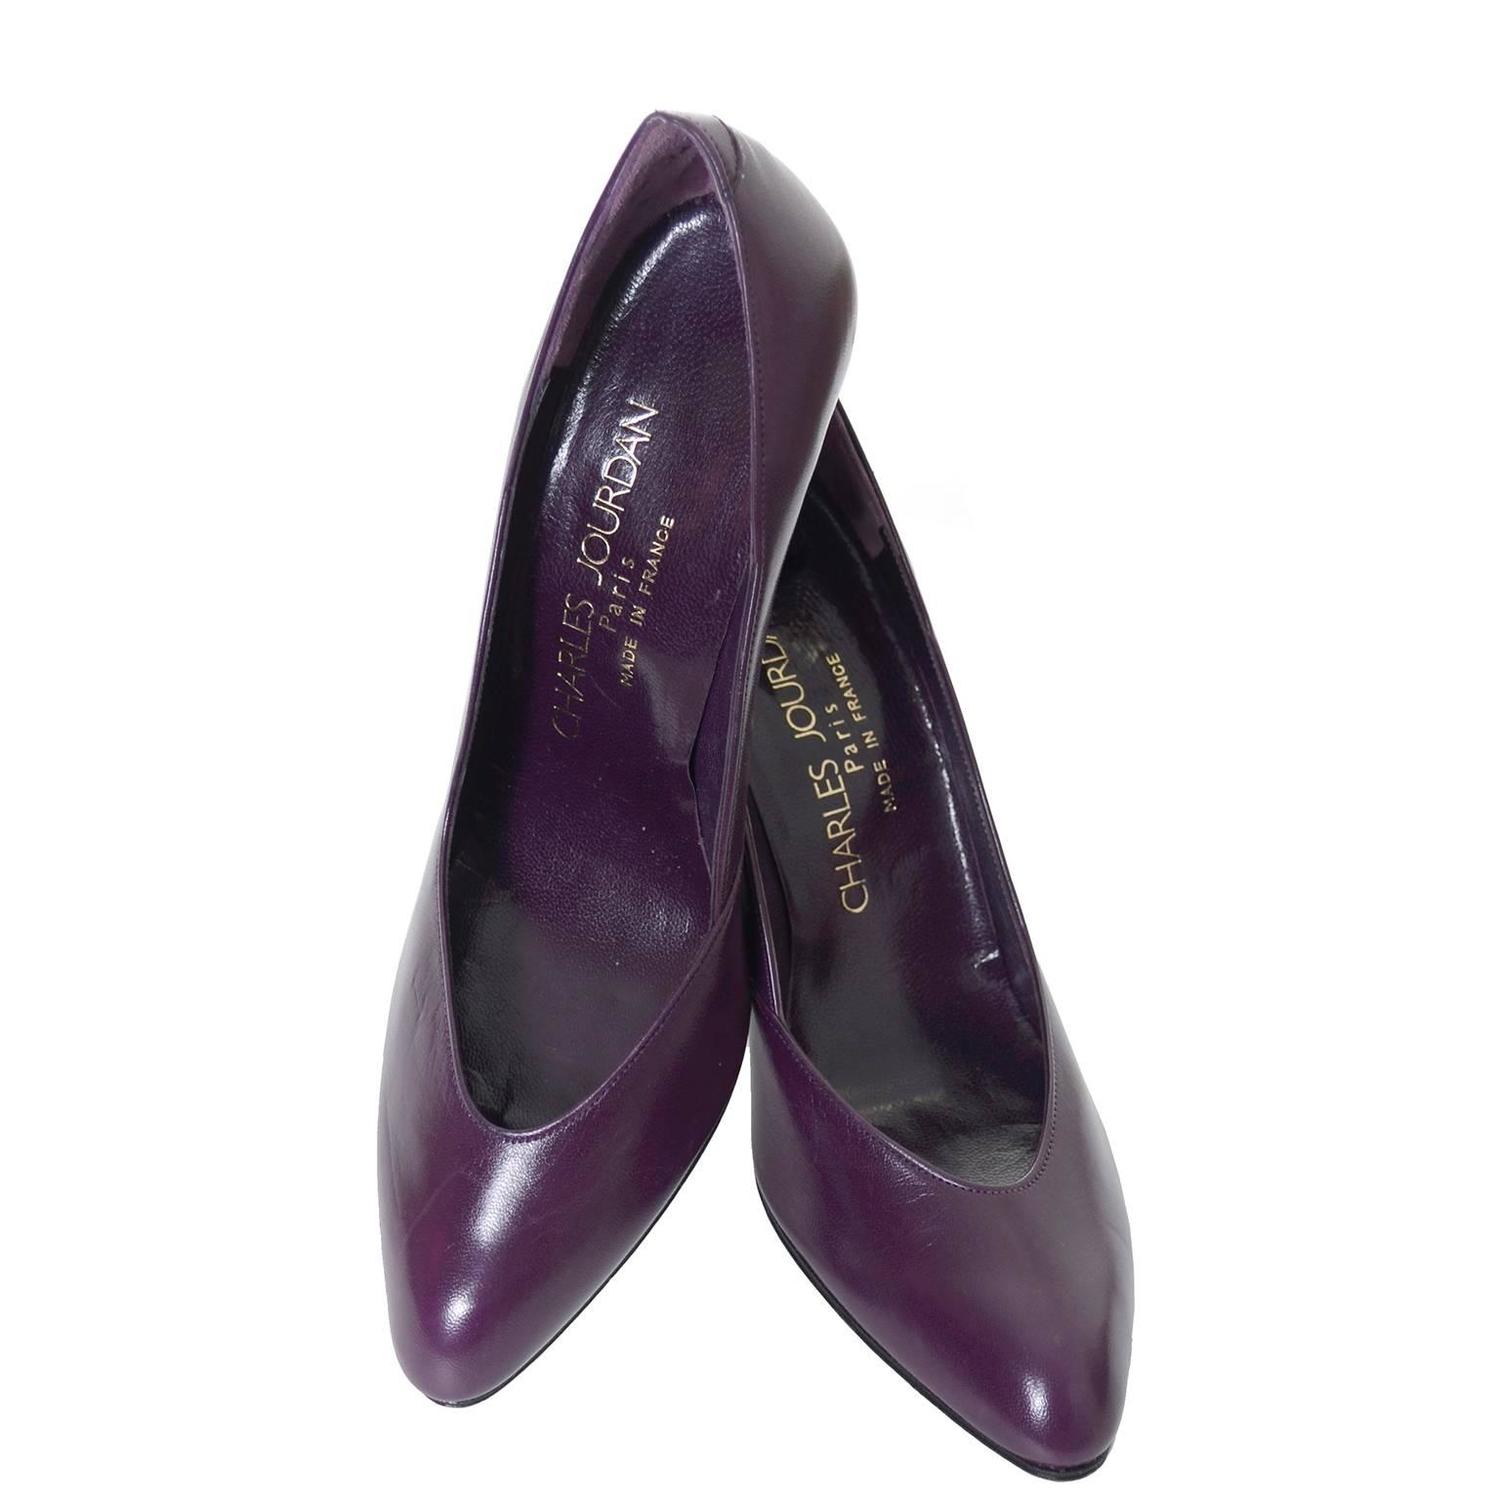 Vintage Charles Jourdan Vintage Shoes Purple Leather Heels